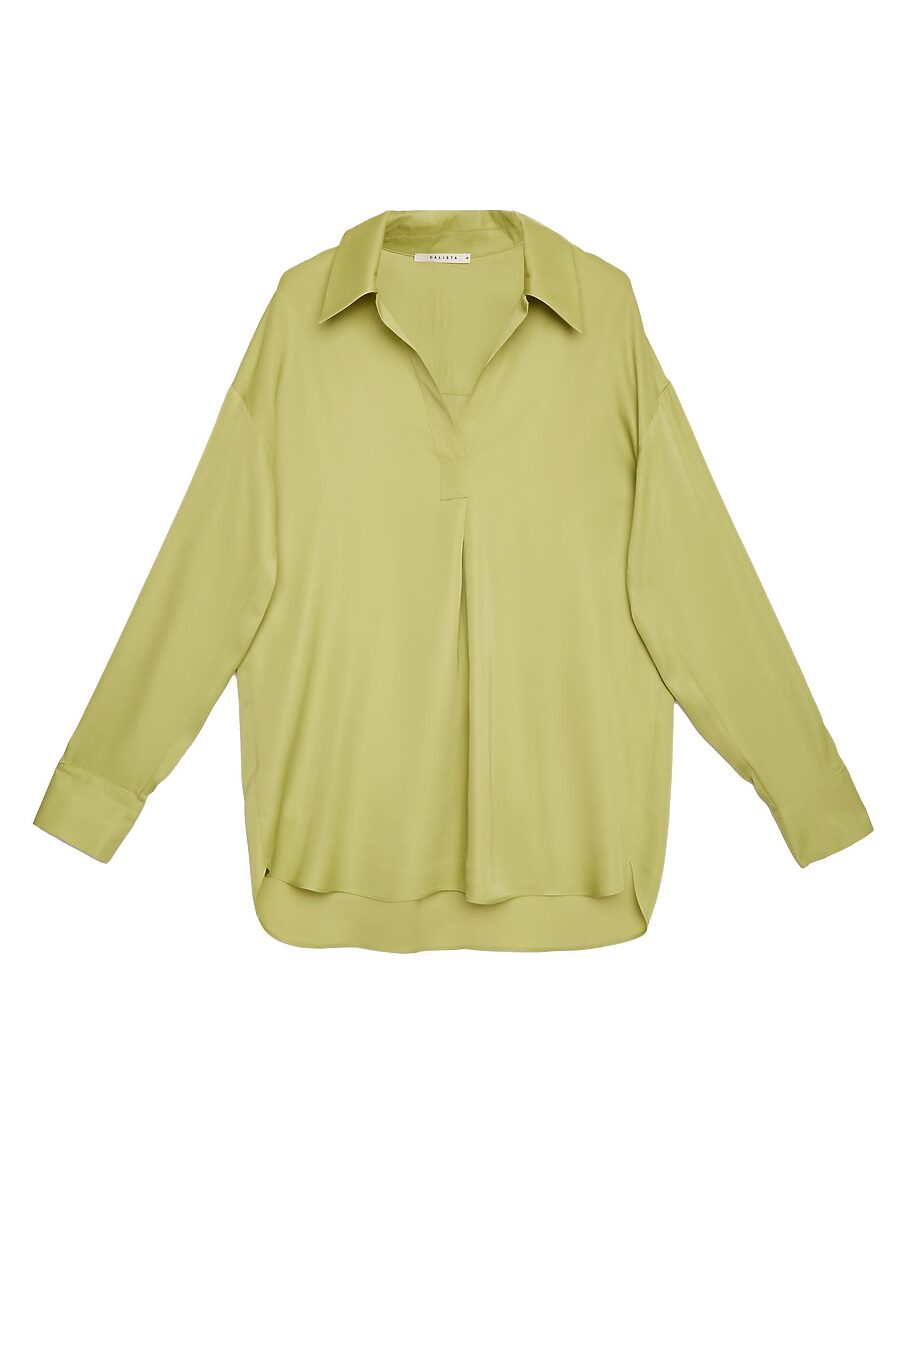 Блузка  для женщин CALISTA 741111 купить оптом от производителя. Совместная покупка женской одежды в OptMoyo